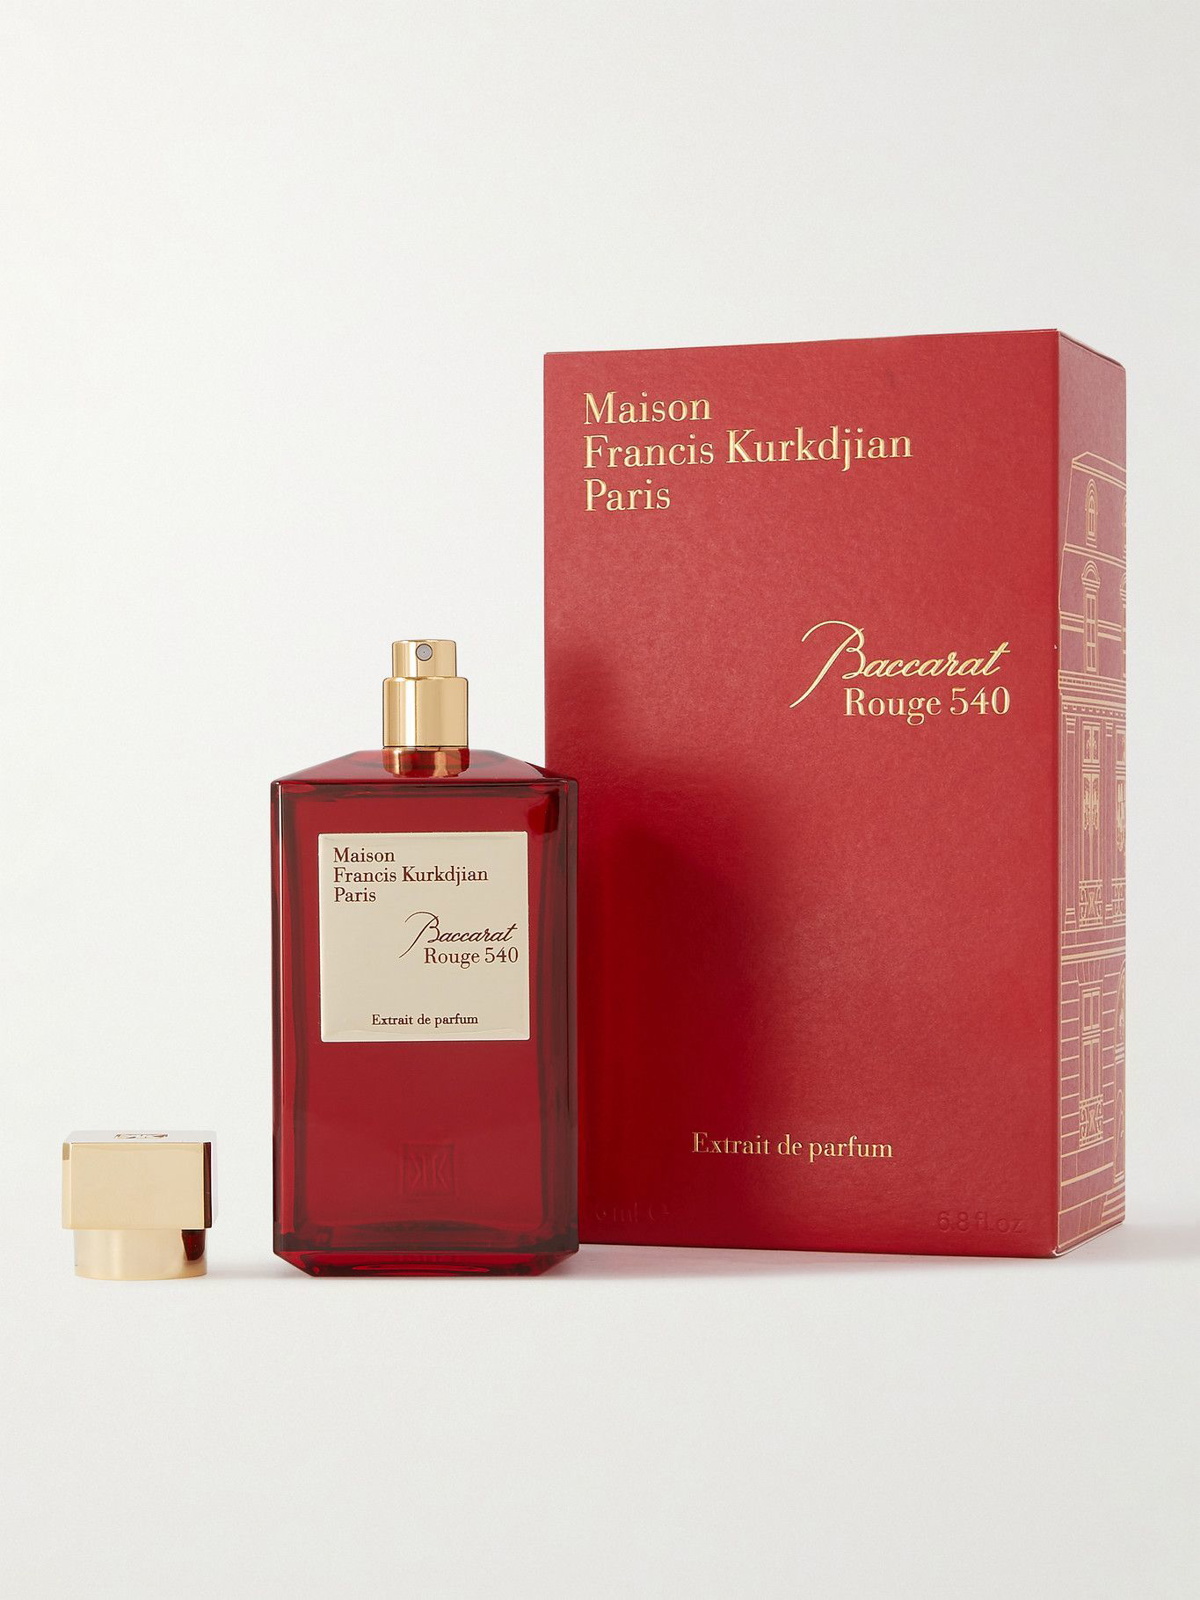 Maison Francis Kurkdjian - Baccarat Rouge 540 Extrait De Parfum, 200ml